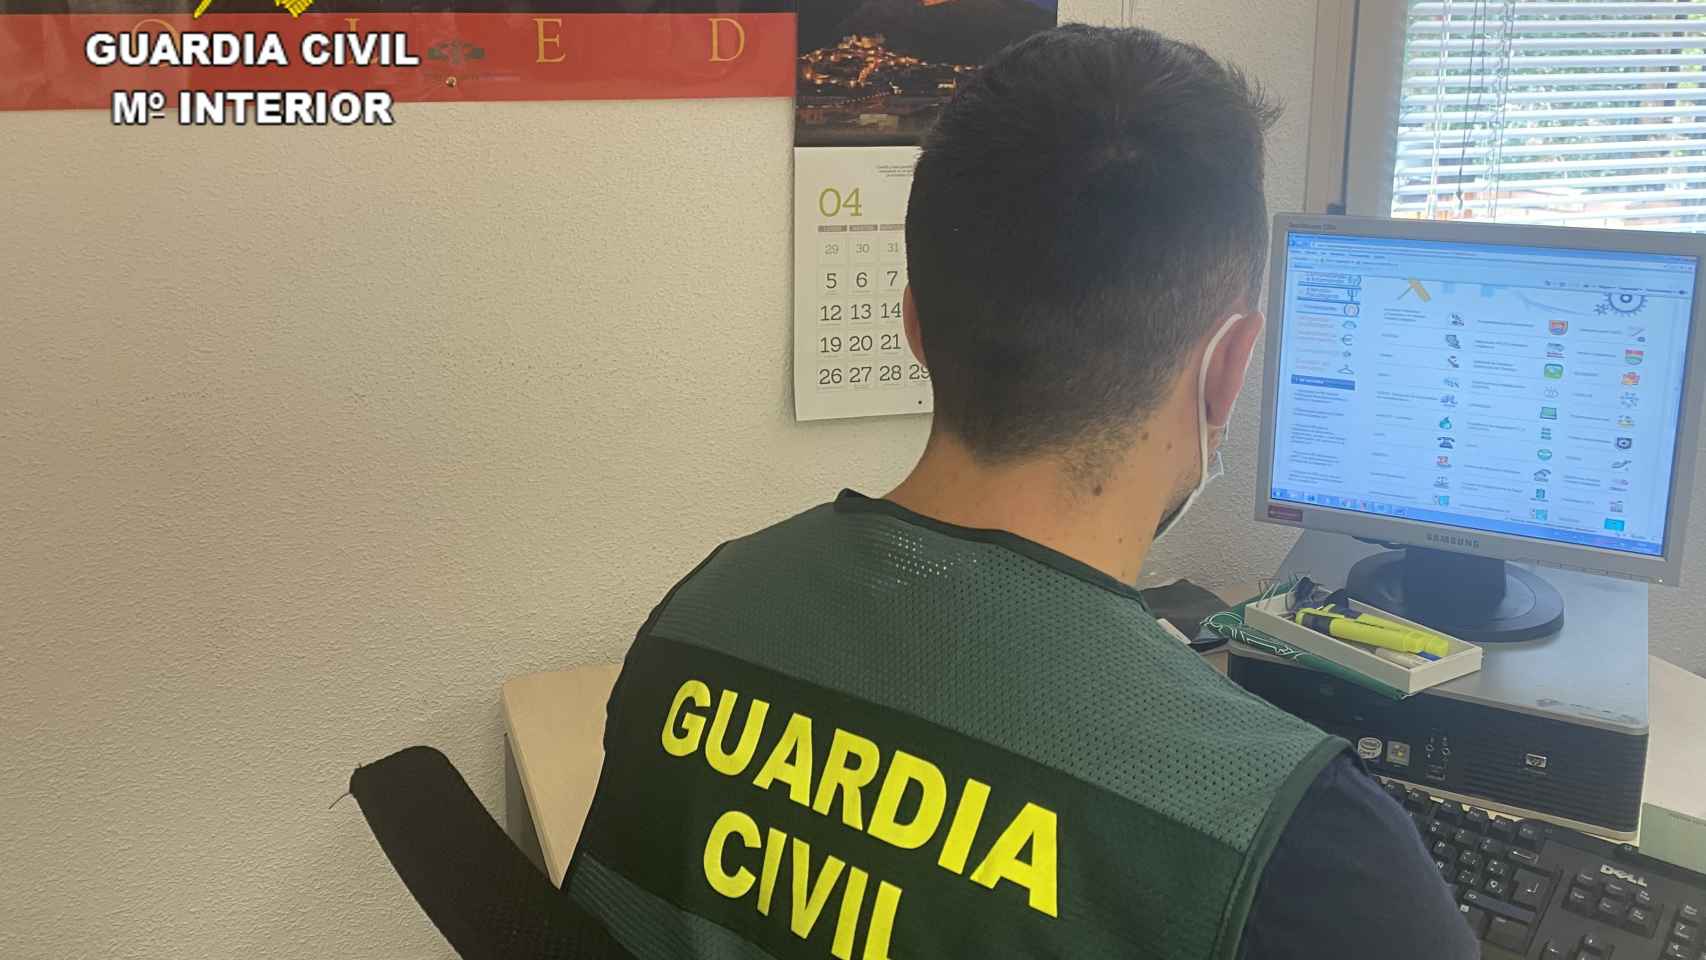 La Guardia Civil ha liberado a la mujer de 29 años retenida y agredida sexualmente en El Toboso.